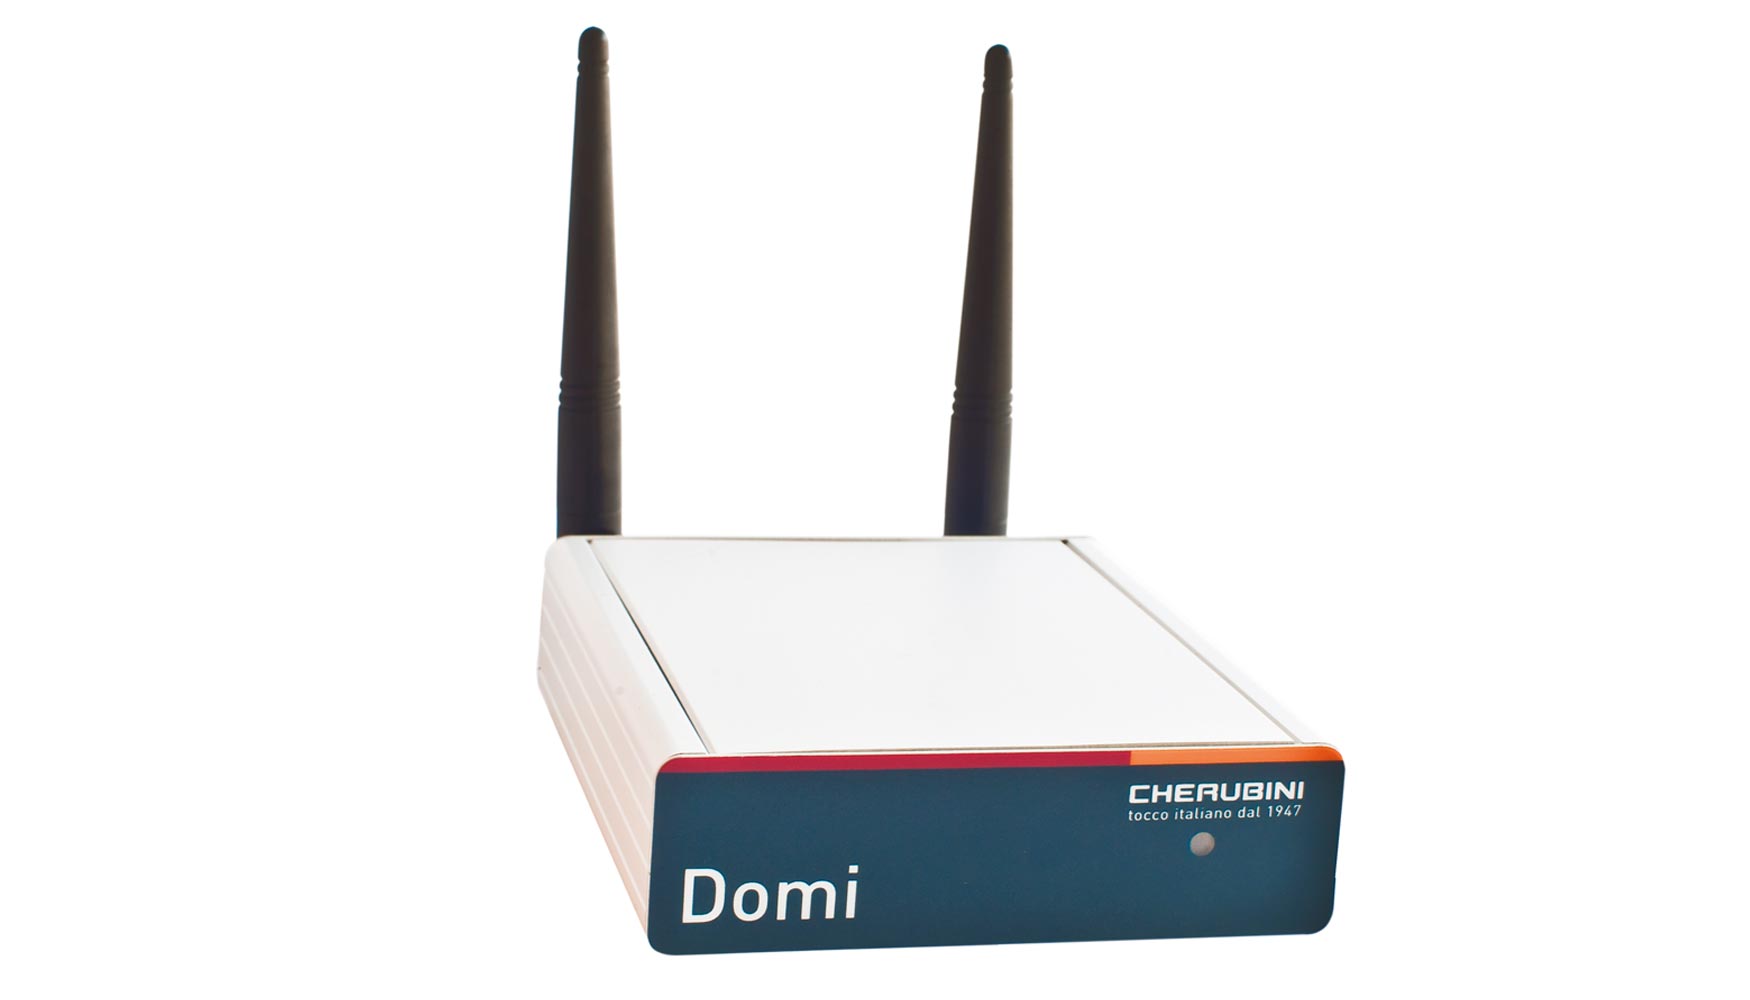 Domi es un sistema innovador de Wi-fi creado por Cherubini